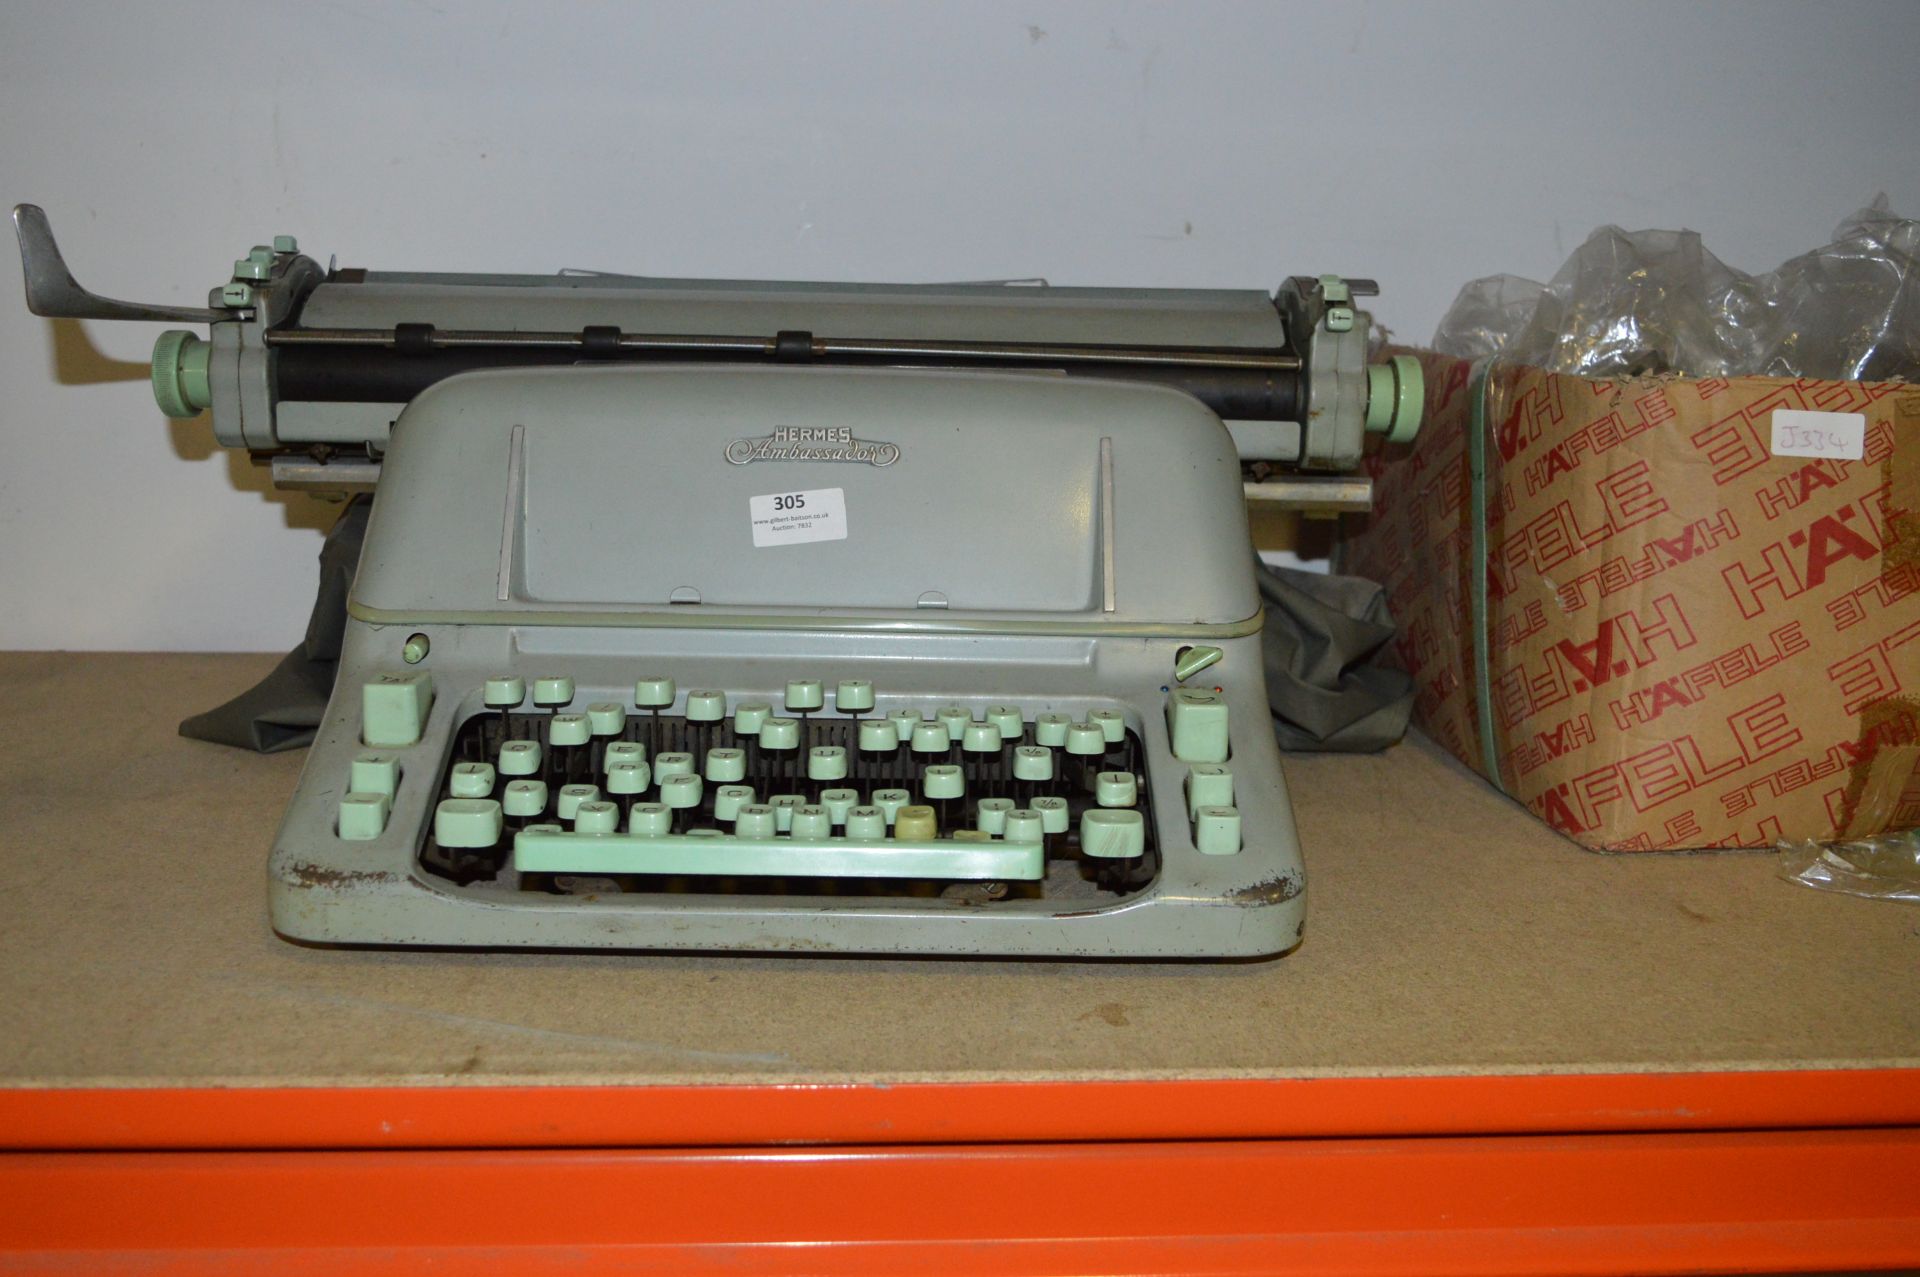 Hermes Ambassador Typewriter